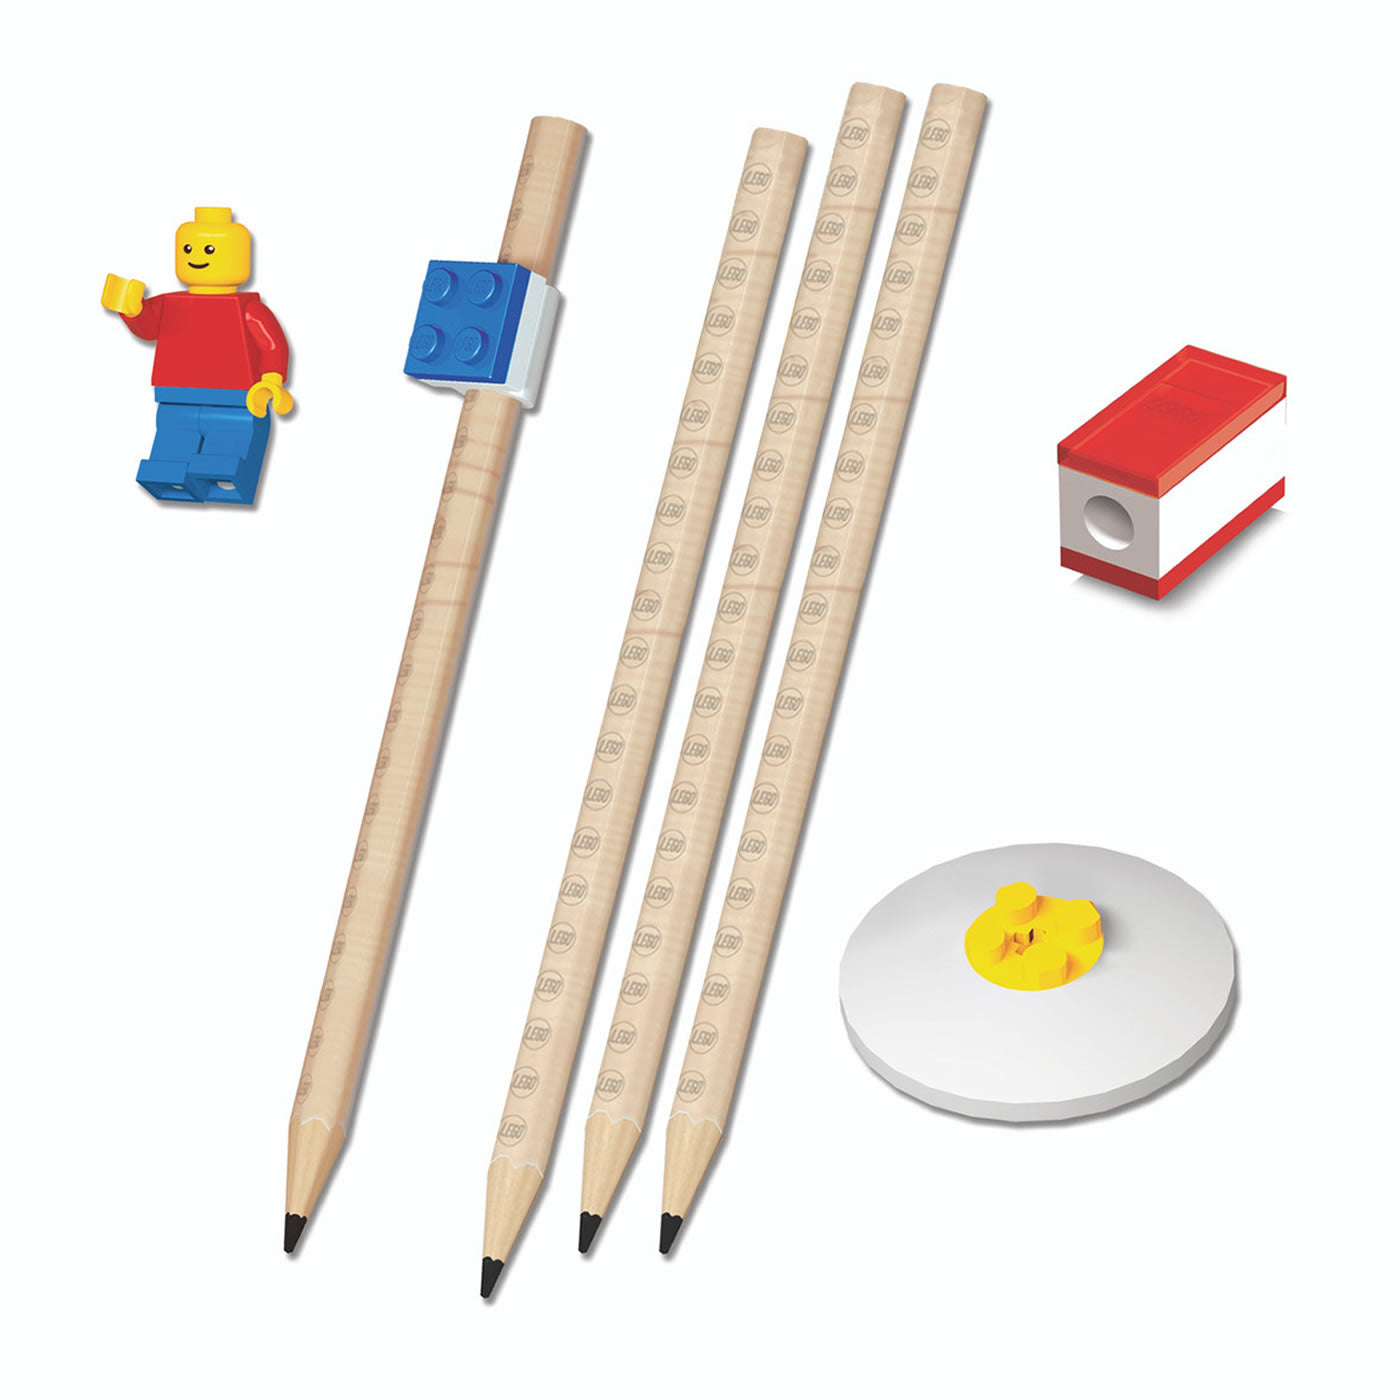 Lego 2.0 Stationery Set With Minifigure